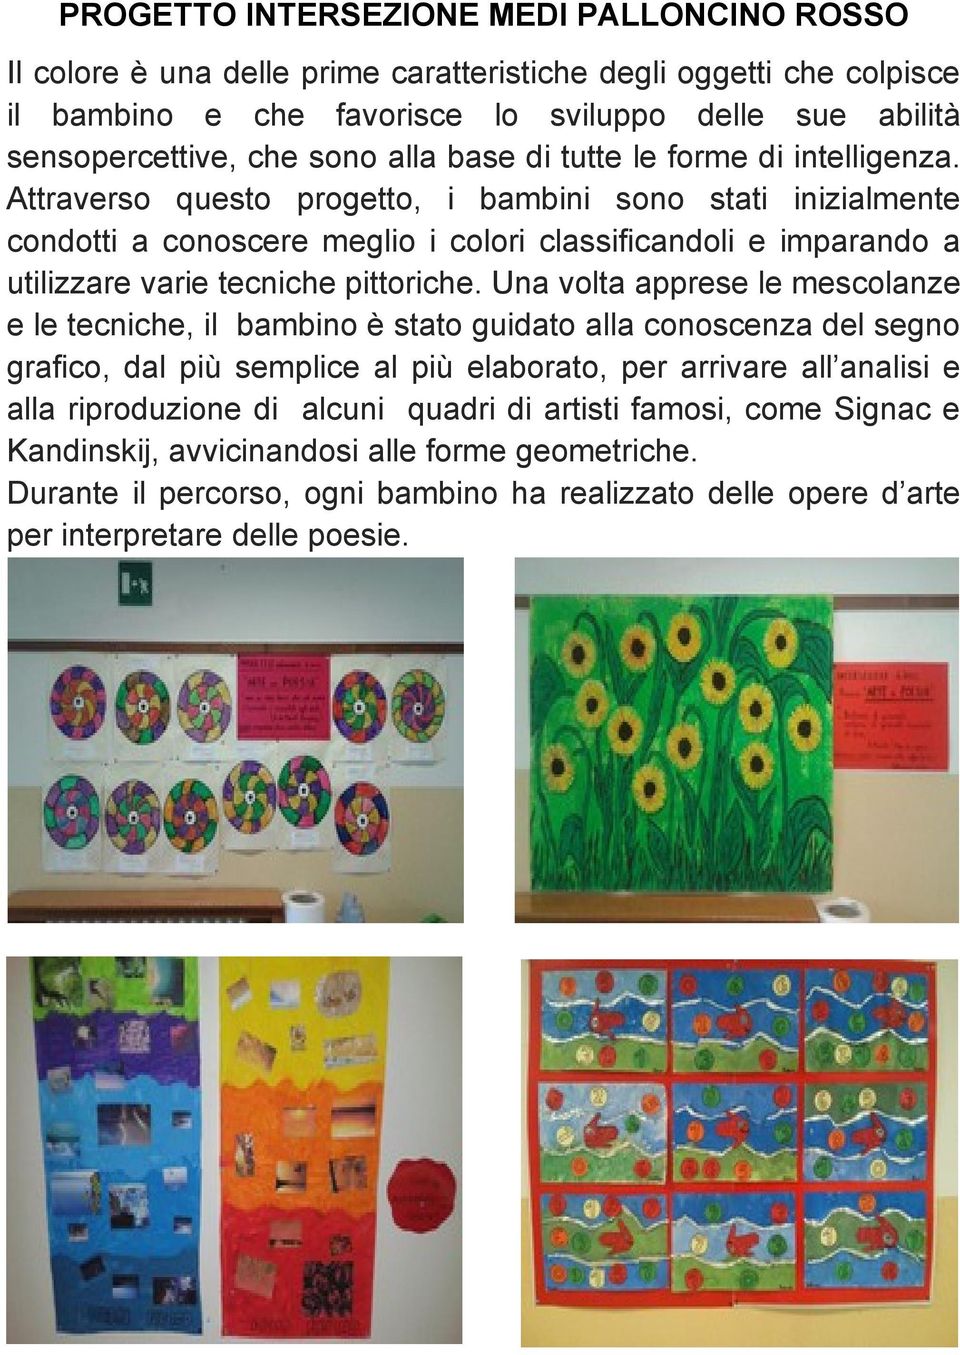 Attraverso questo progetto, i bambini sono stati inizialmente condotti a conoscere meglio i colori classificandoli e imparando a utilizzare varie tecniche pittoriche.